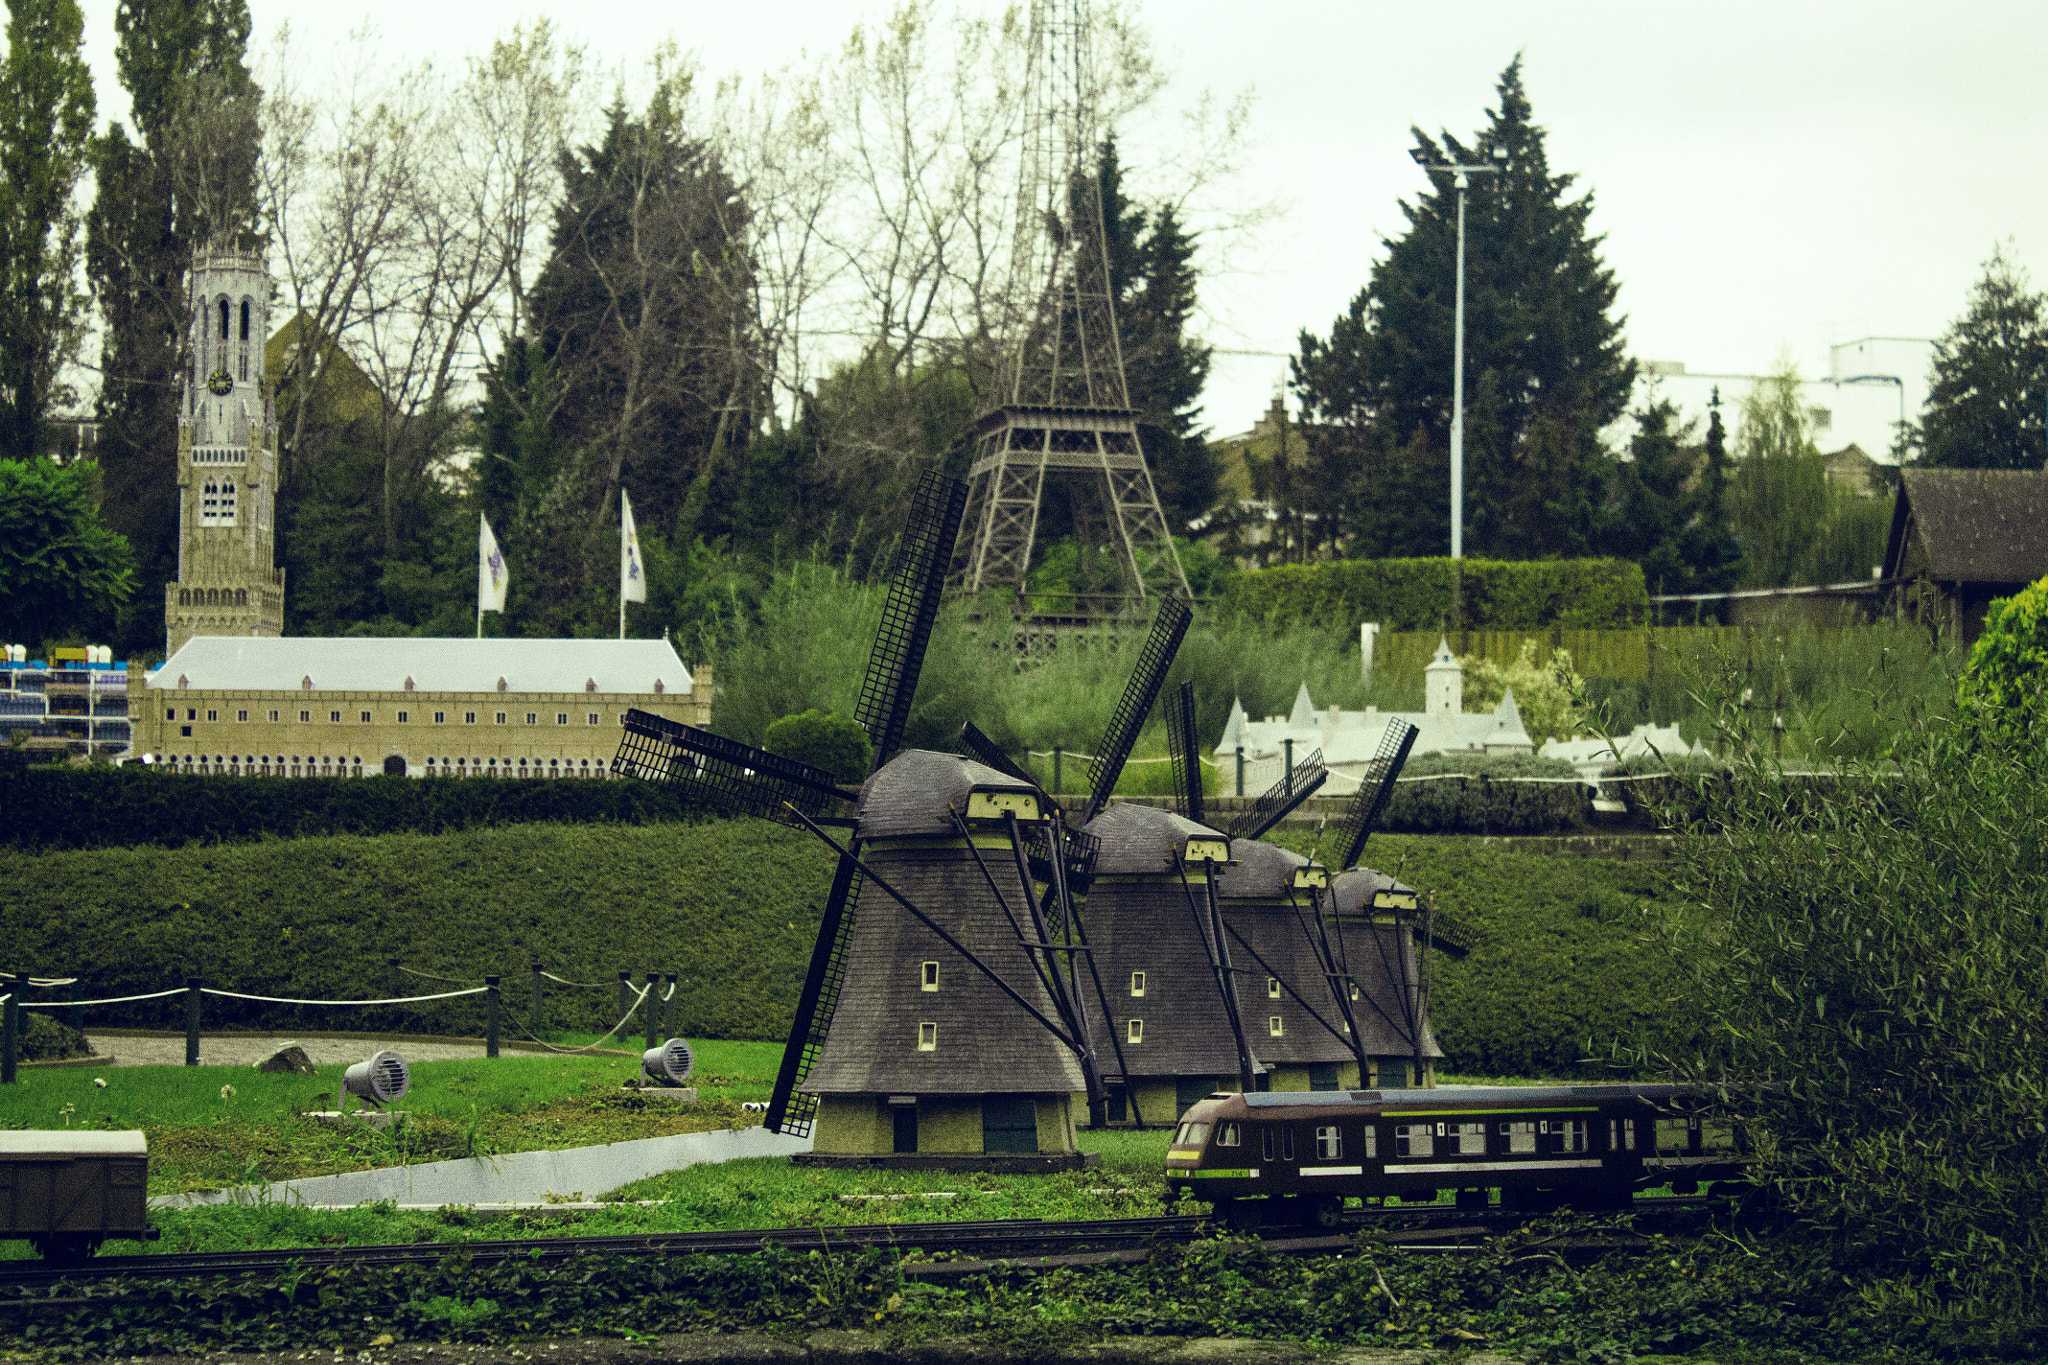 The Mills of Kinderdijk